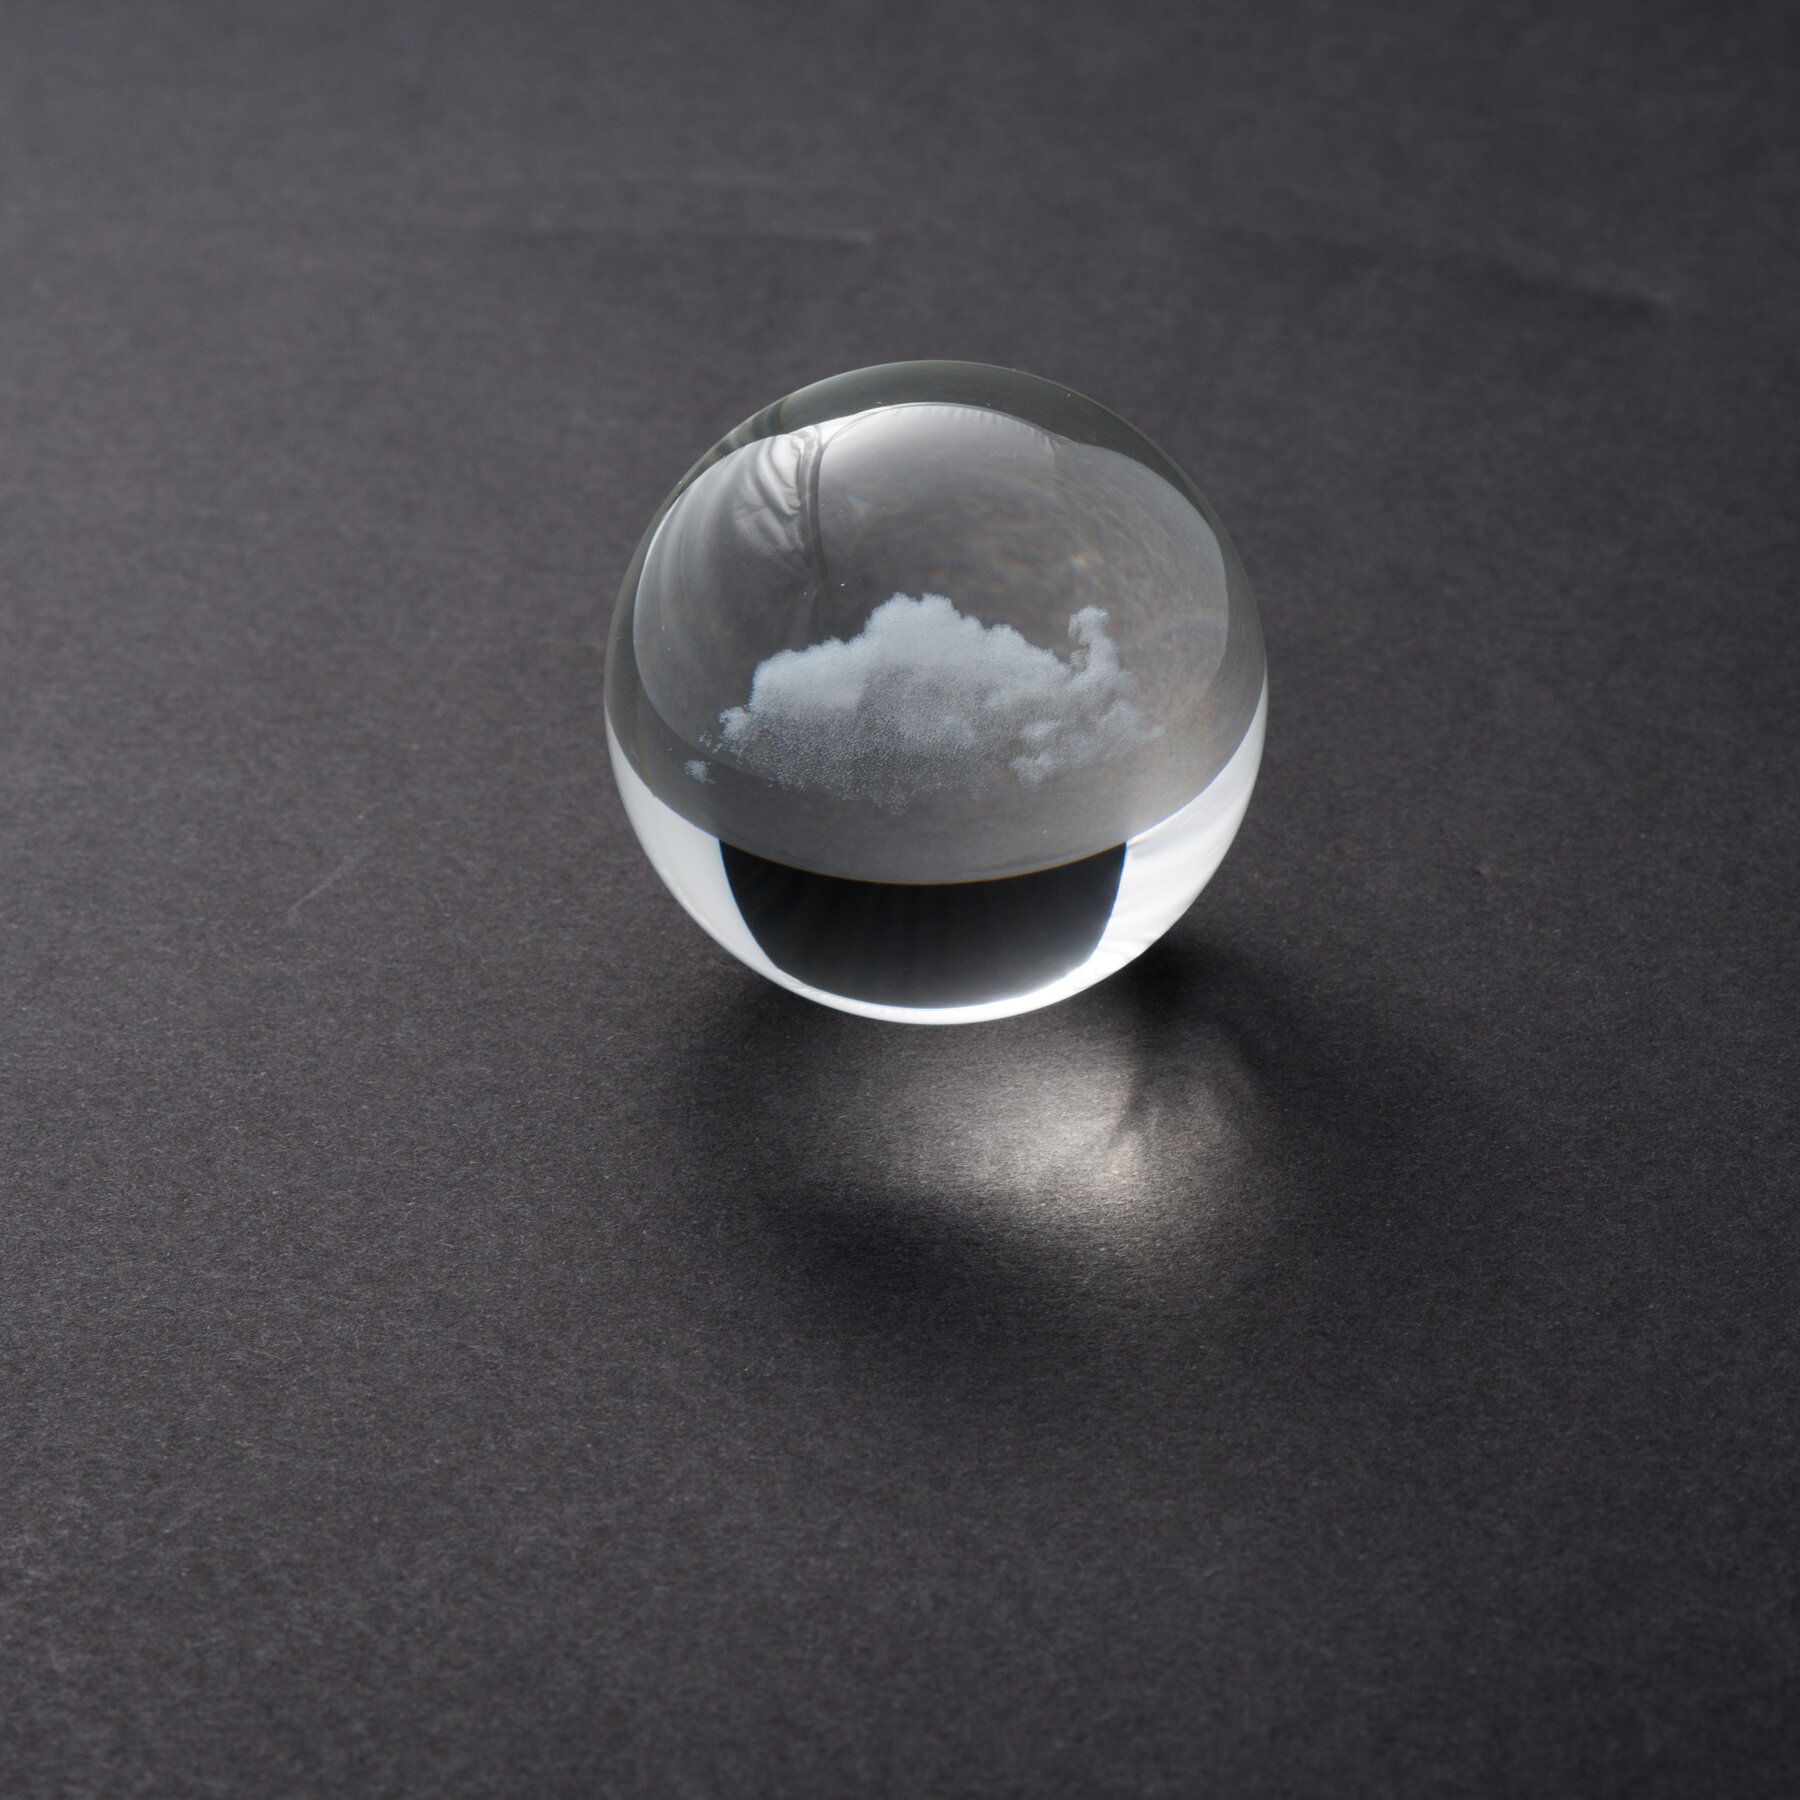 cloud_sphere_mini_1.75x1.75x1.75_inches_glass_2017_miya_ando_3.jpg